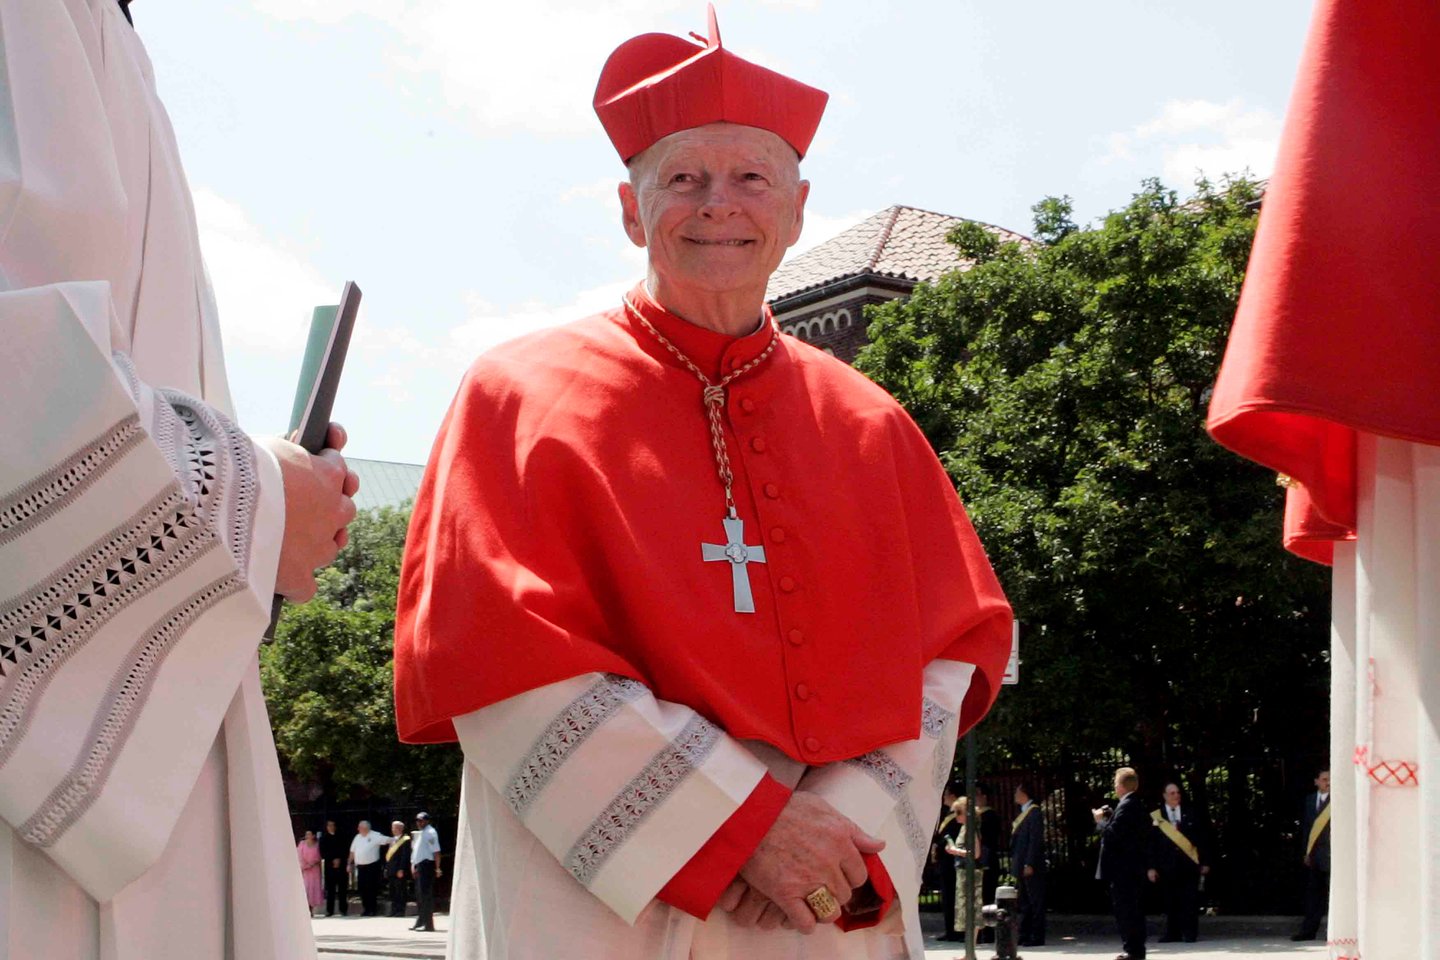 Buvęs įtakingas kardinolas iš JAV Th. McCarrickas buvo išmestas iš dvasininkų luomo už pedofiliją ir seksualinius nusikaltimus.<br>Reuters/Scanpix nuotr.